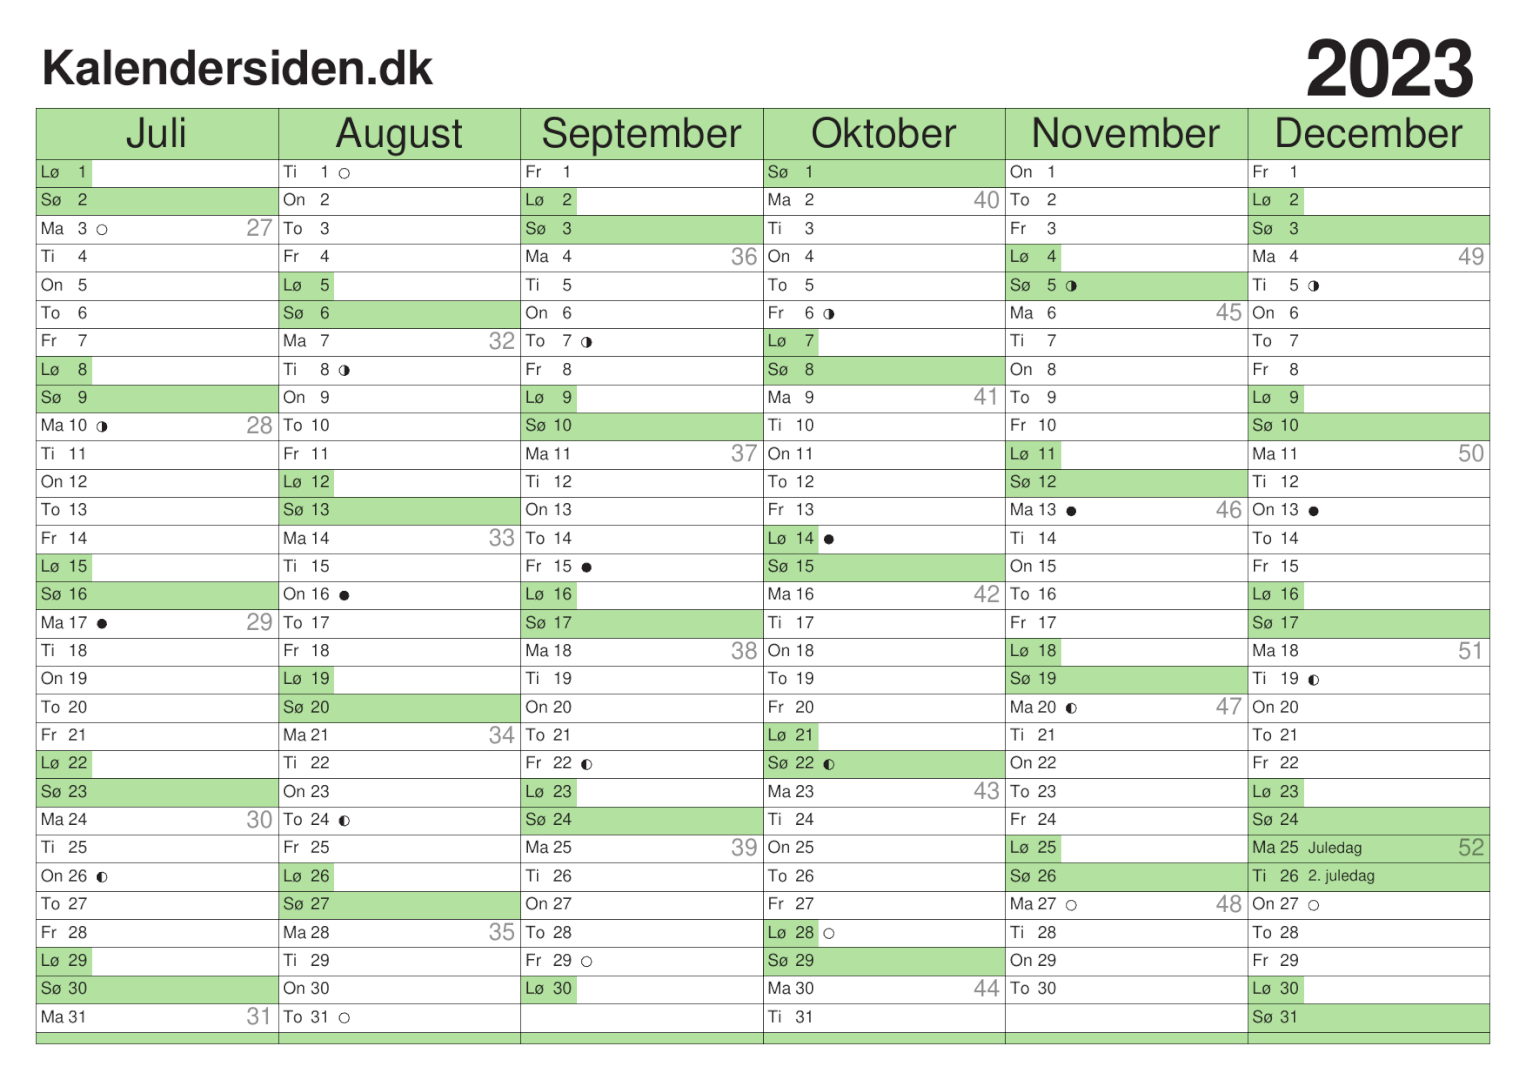 Kalendersiden: den print-selv kalender